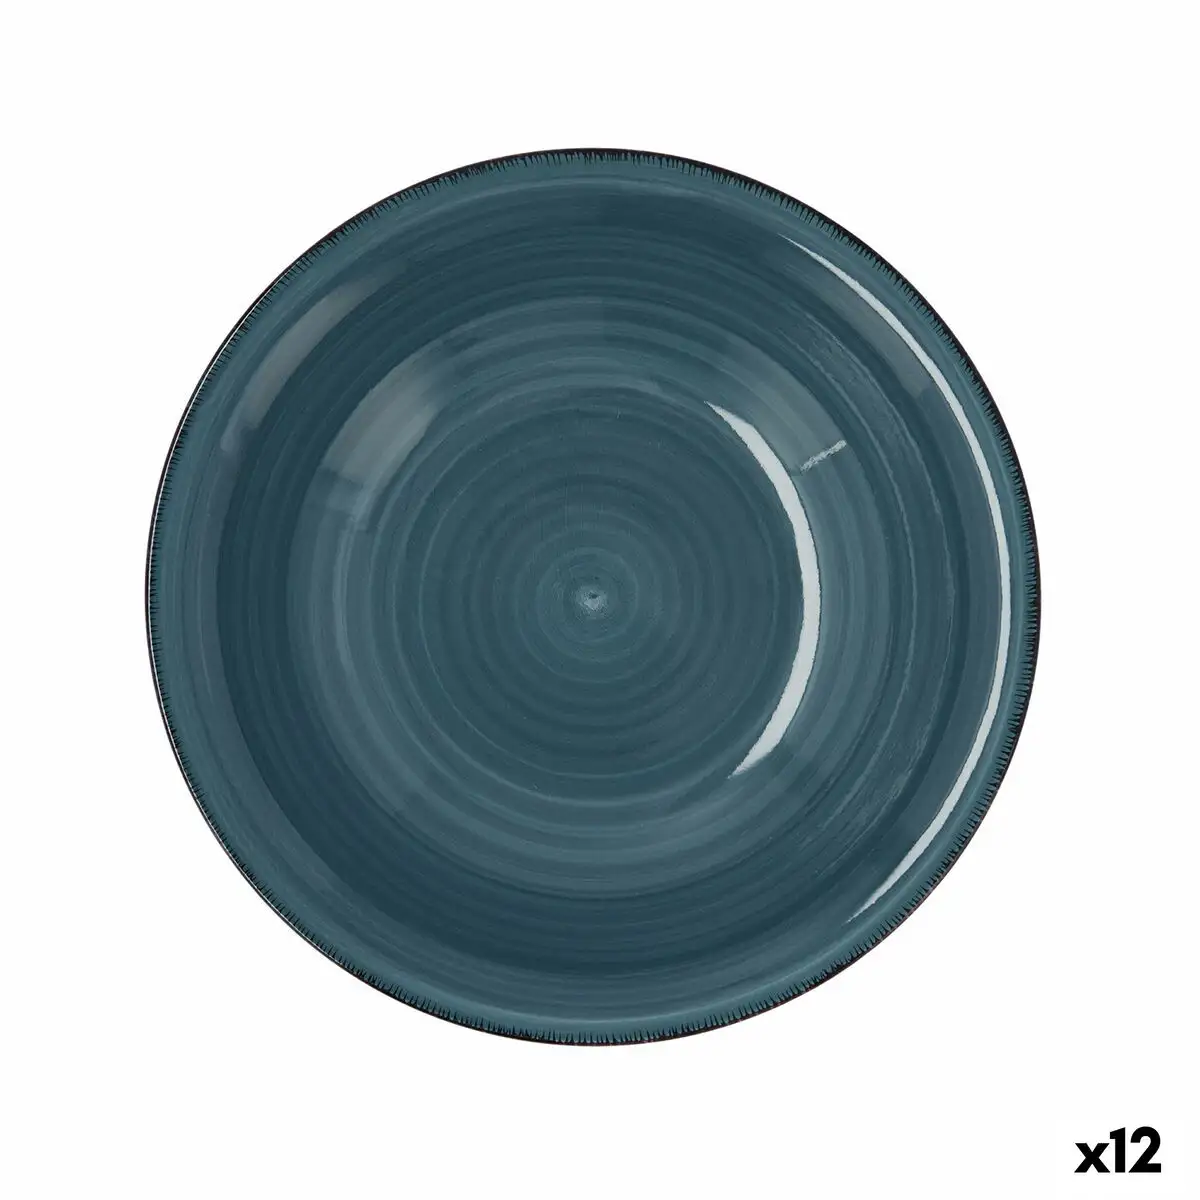 Assiette creuse quid vita ceramique bleu o 21 5 cm 12 unites _4943. DIAYTAR SENEGAL - Votre Source de Découvertes Shopping. Découvrez des trésors dans notre boutique en ligne, allant des articles artisanaux aux innovations modernes.